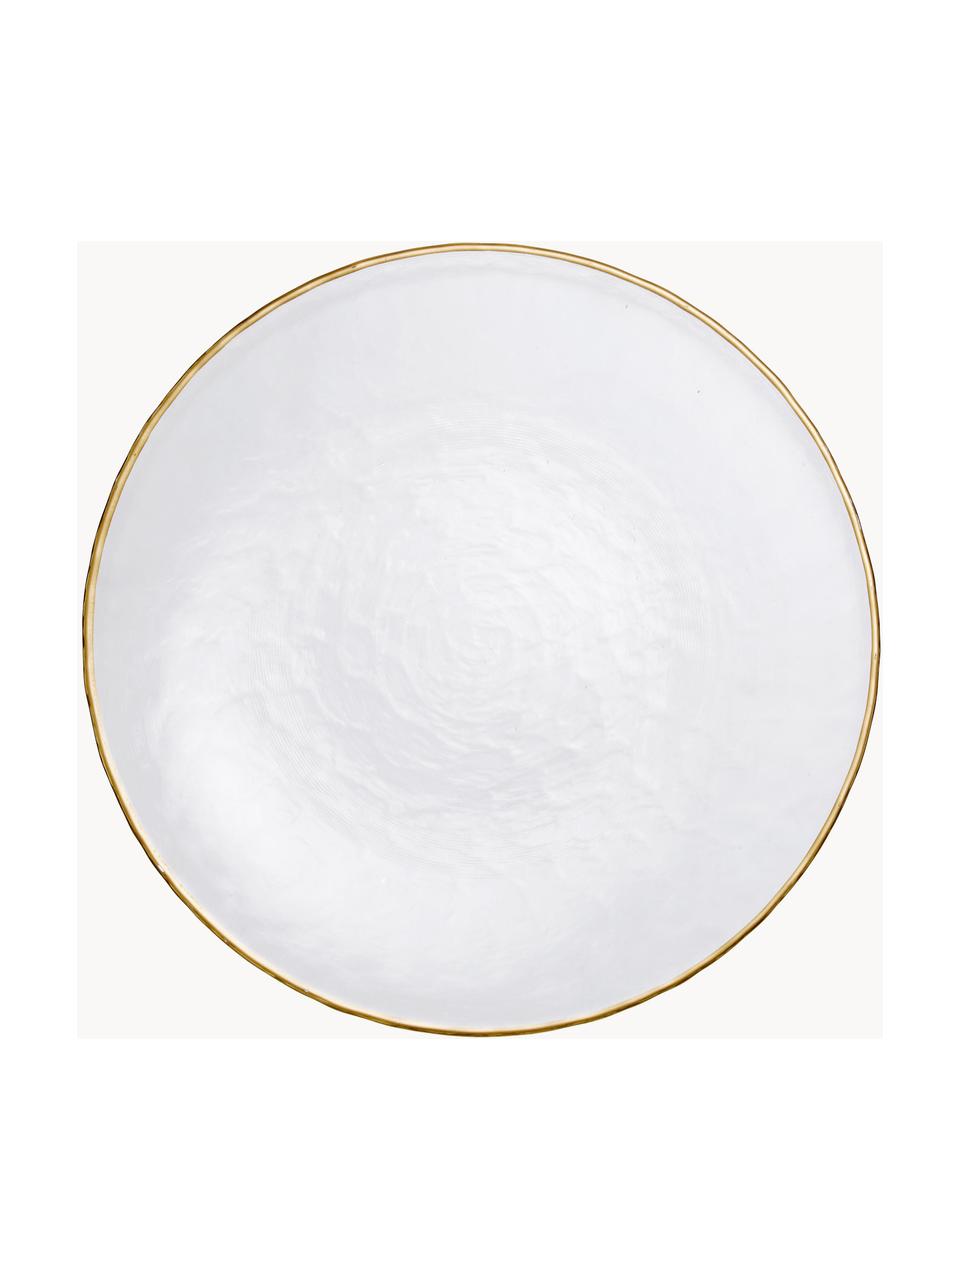 Assiettes plates en verre Orphee, 2 pièces, Verre, Transparent avec bordure dorée, Ø 28 cm